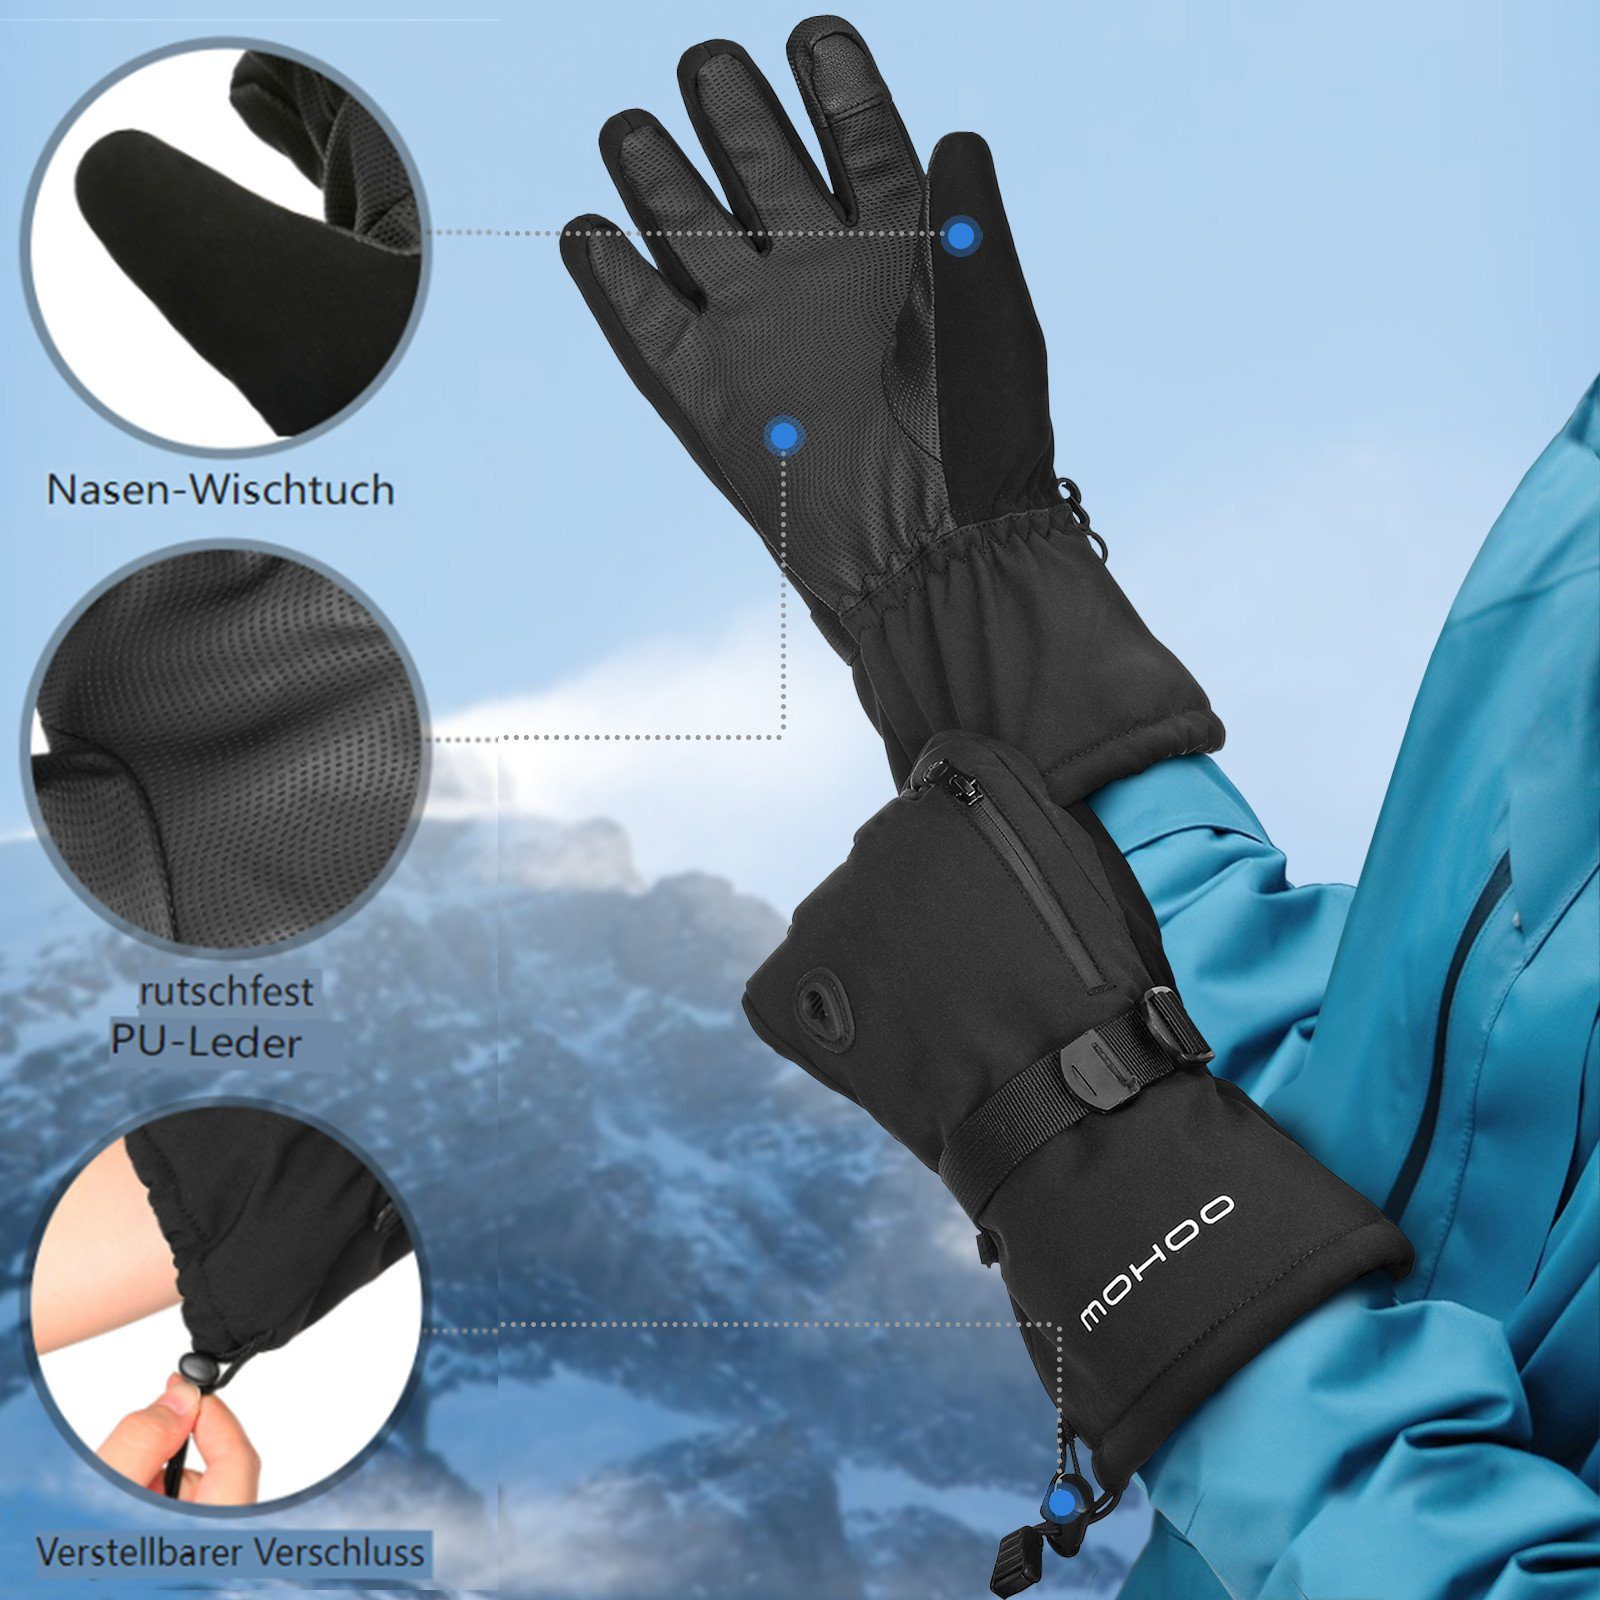 (M) Fahrrad Skihandschuhe Mohoo Handschuhe, Wasserdicht Schwarz Touchscreen, Skihandschuhe Winter